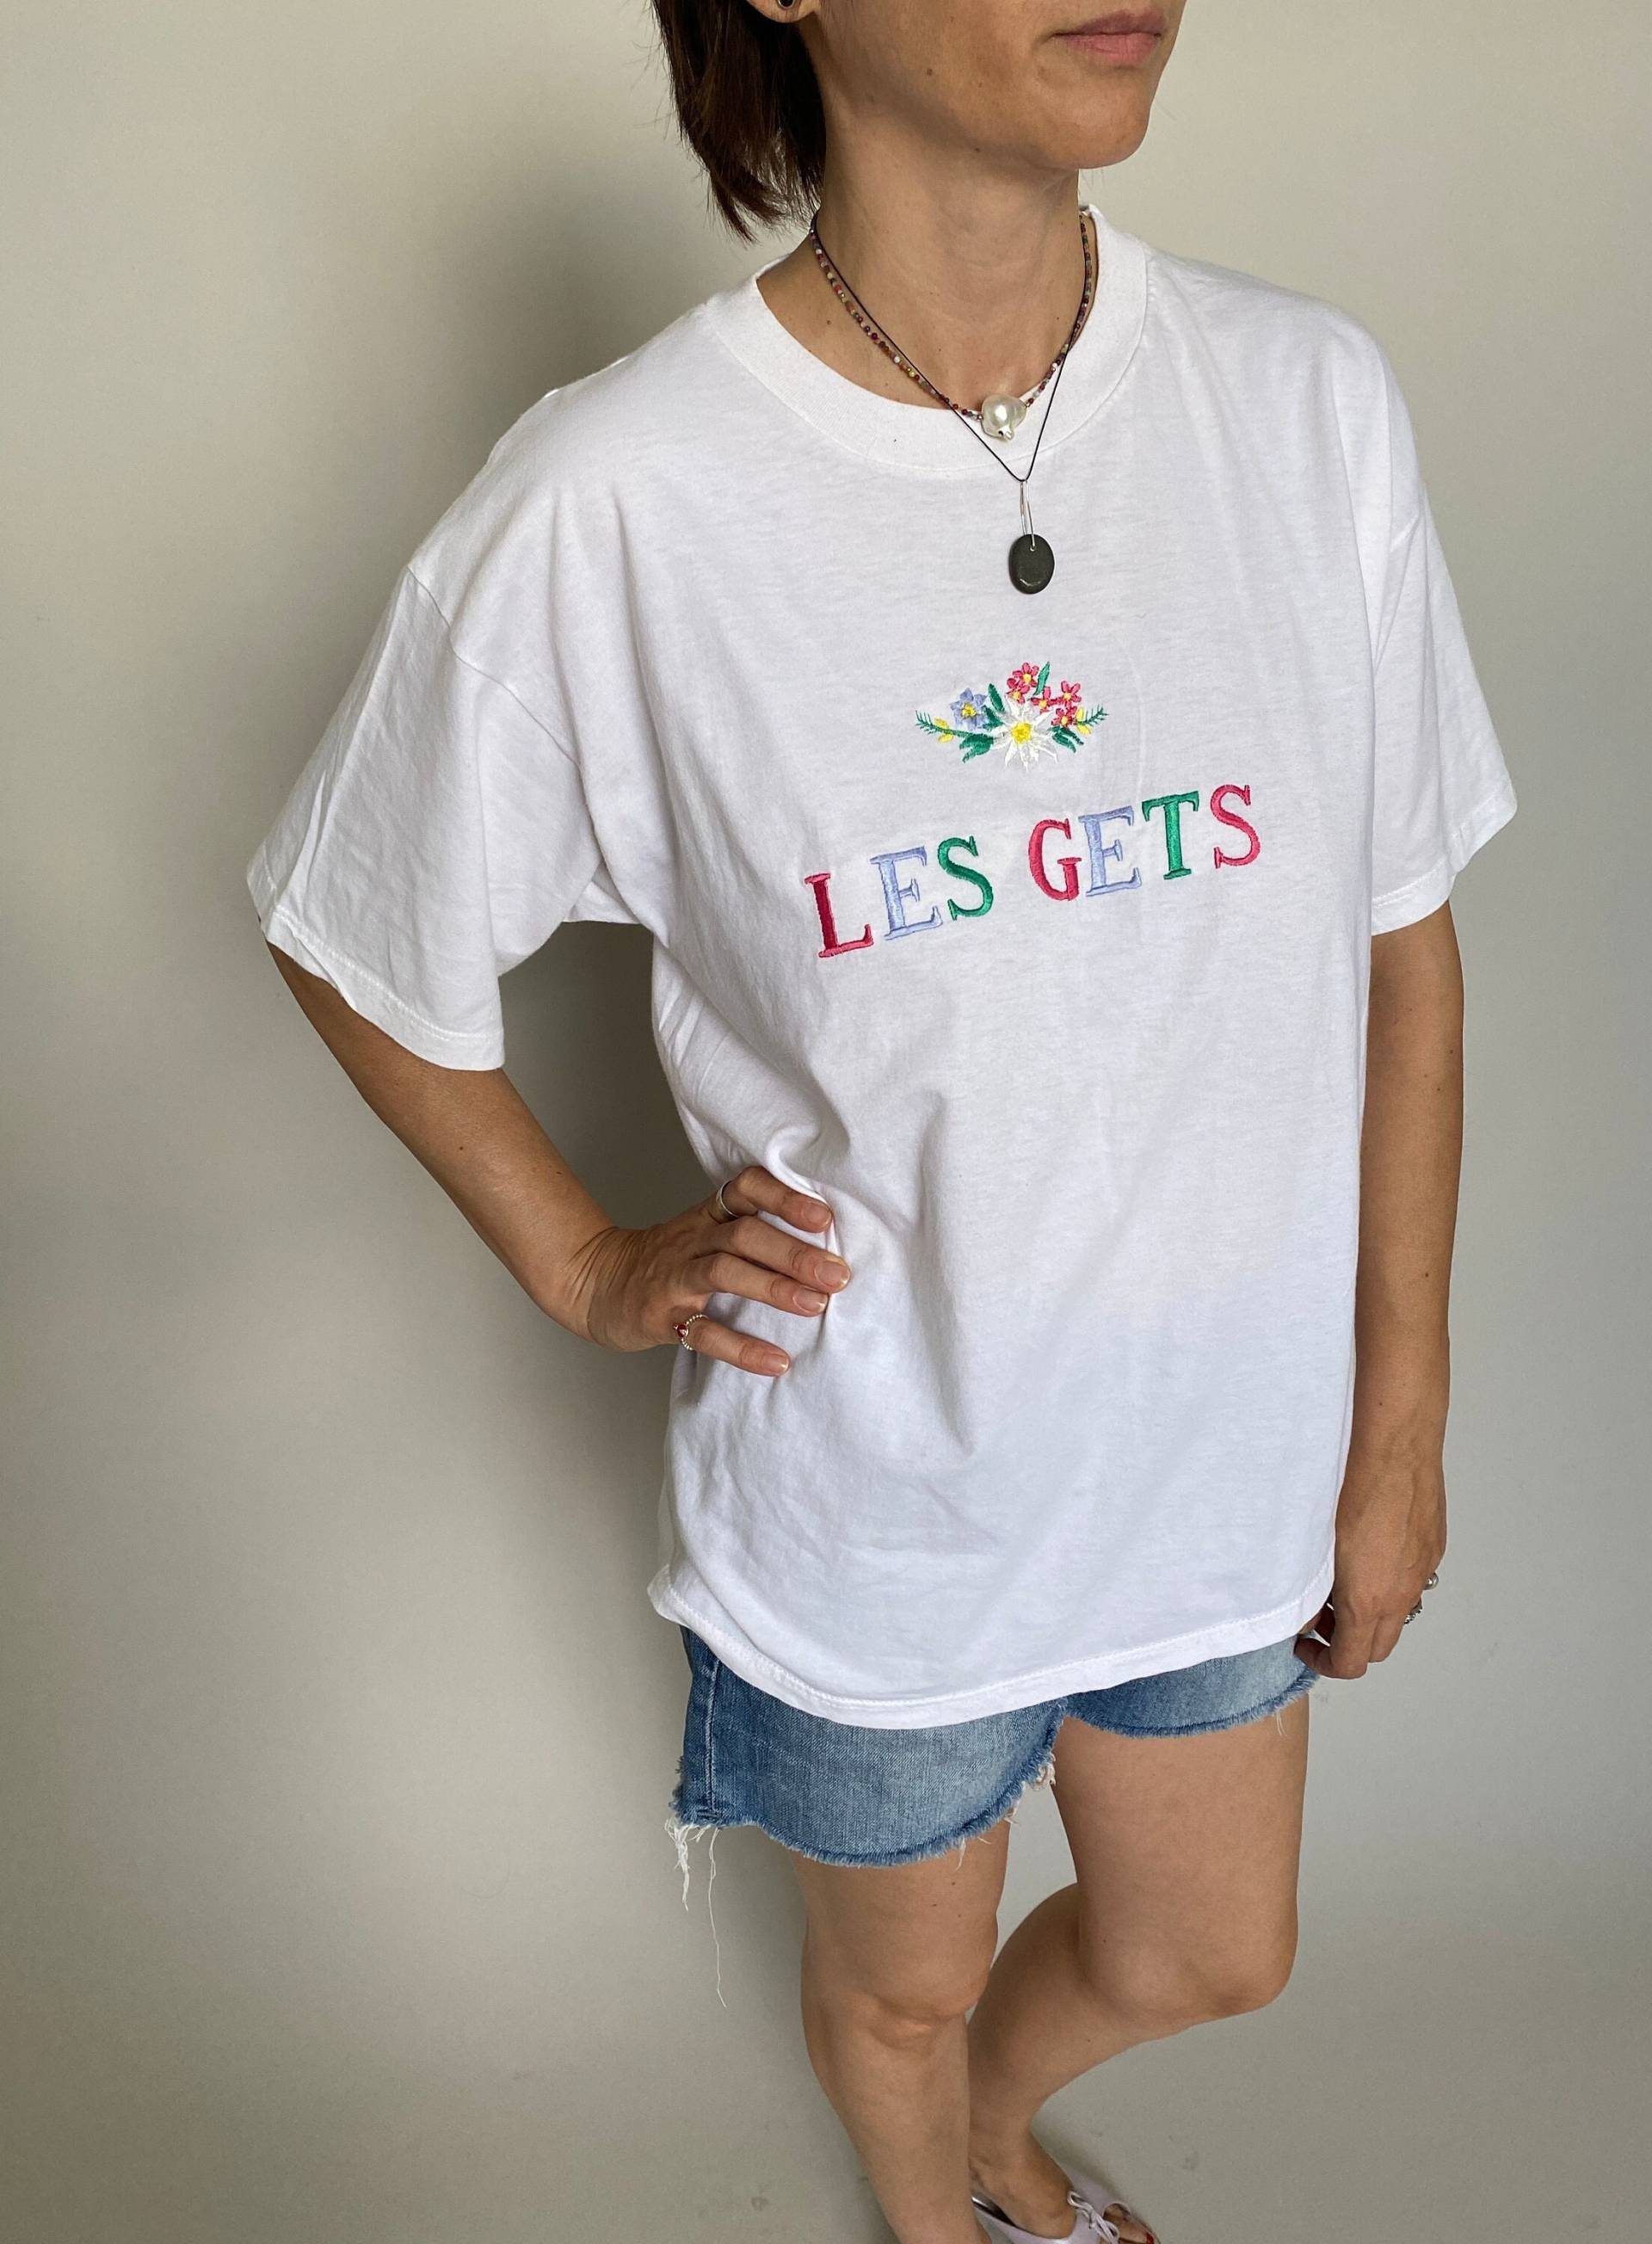 Vintage Weißes T-Shirt "Les Gets" Stickerei | Frauen Rundhals-T-Shirt Mit Bunten Blumenstickereien Ftv1589 von whiteaporter